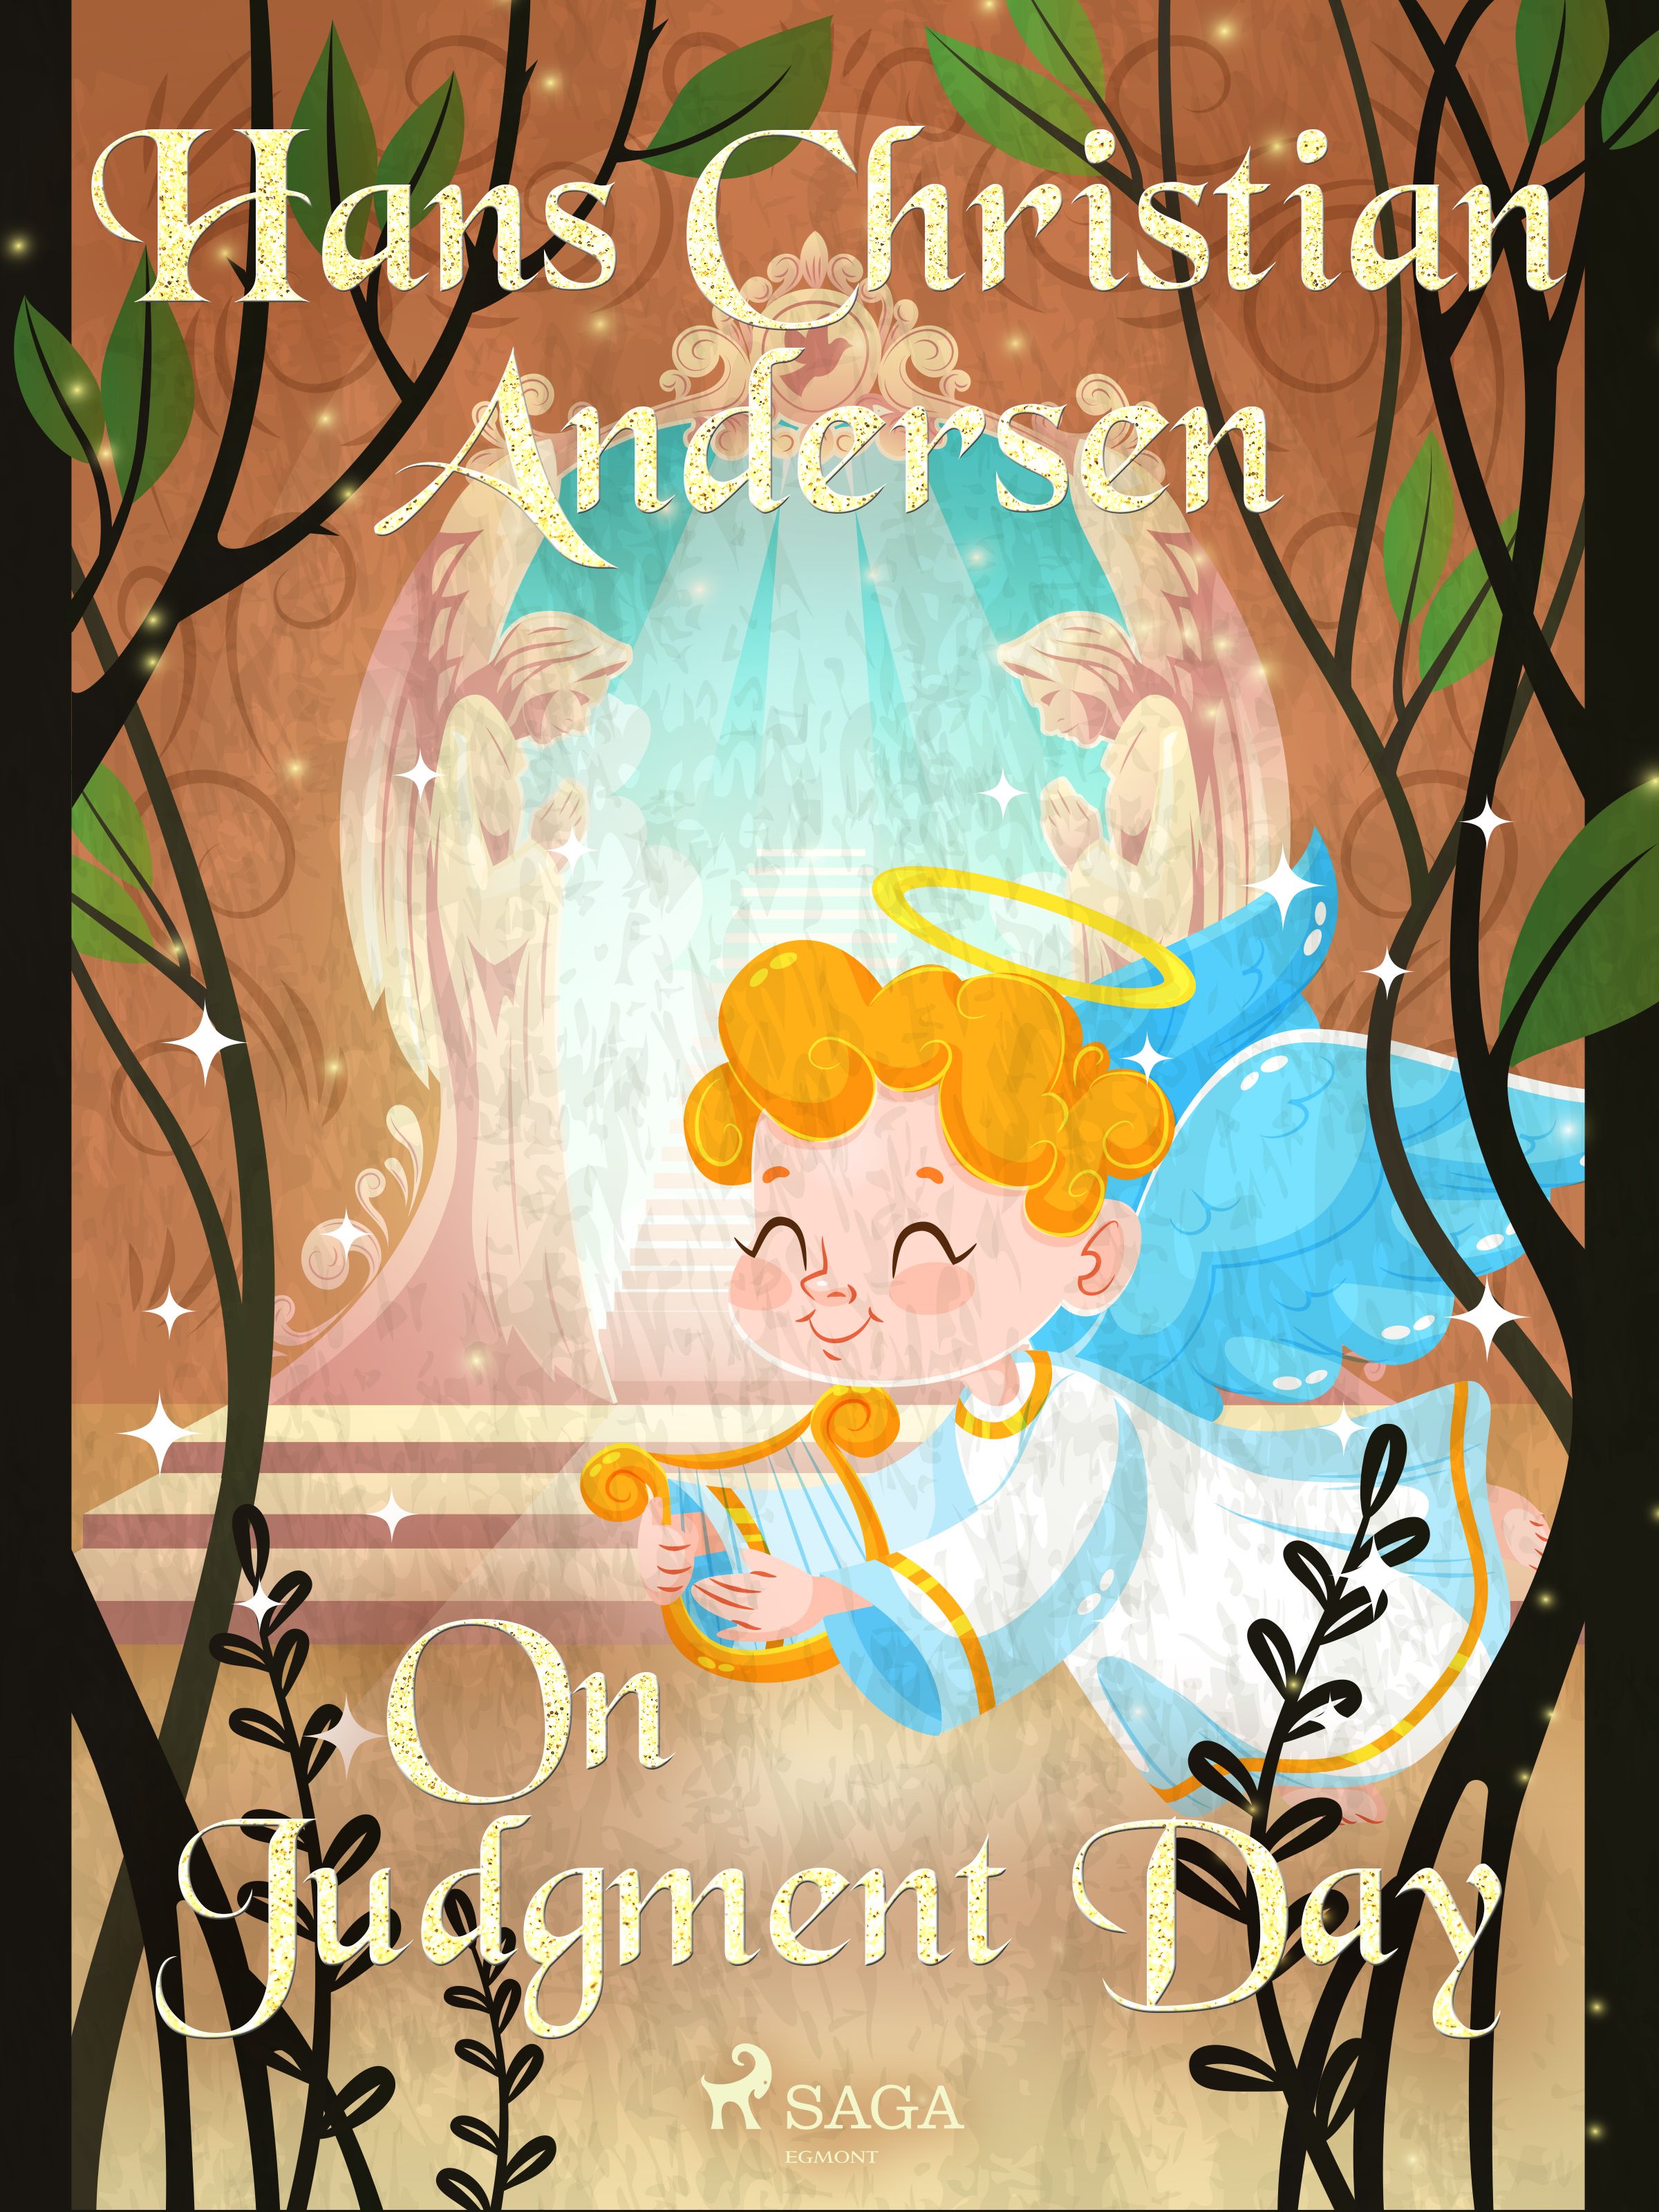 On Judgment Day, e-bok av Hans Christian Andersen